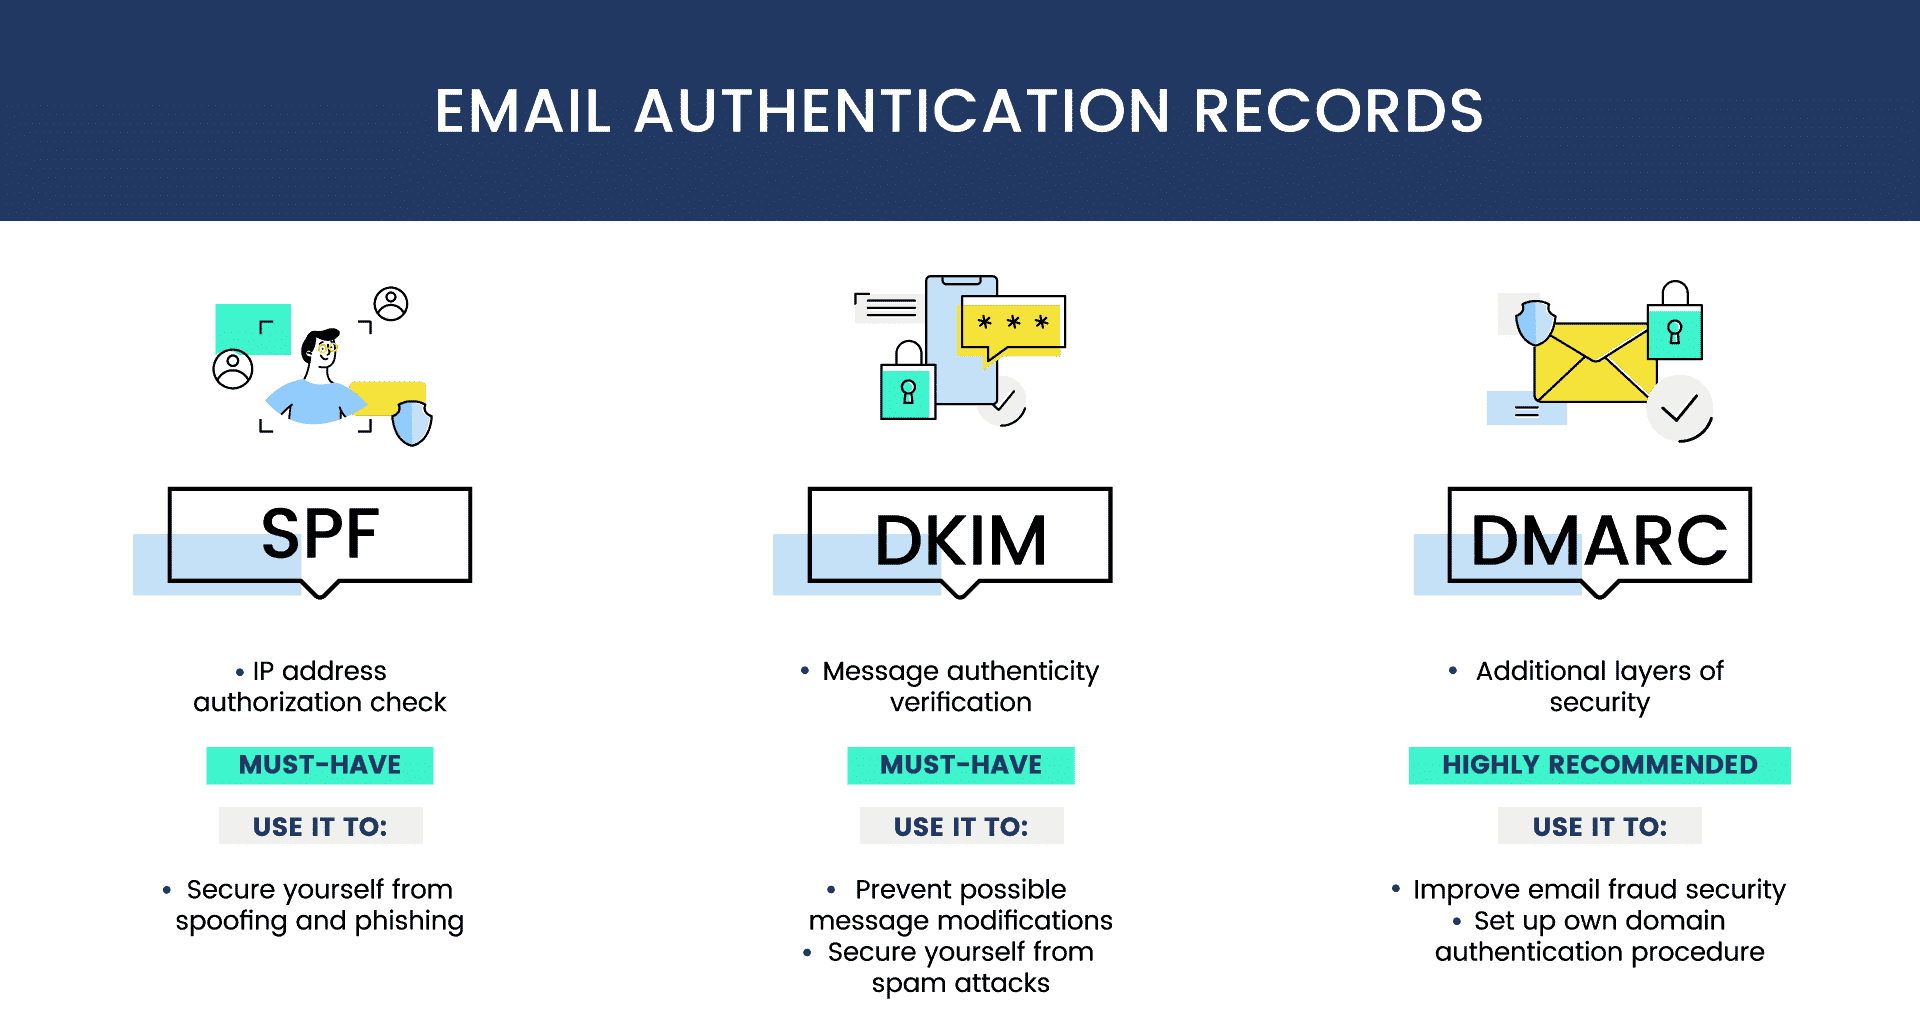 Et informativt billede, der illustrerer de tre vigtige email authentication records - SPF og DKIM og DMARC, hver med ikoner og korte beskrivelser af deres formål og betydning for at forbedre mailsikkerheden.